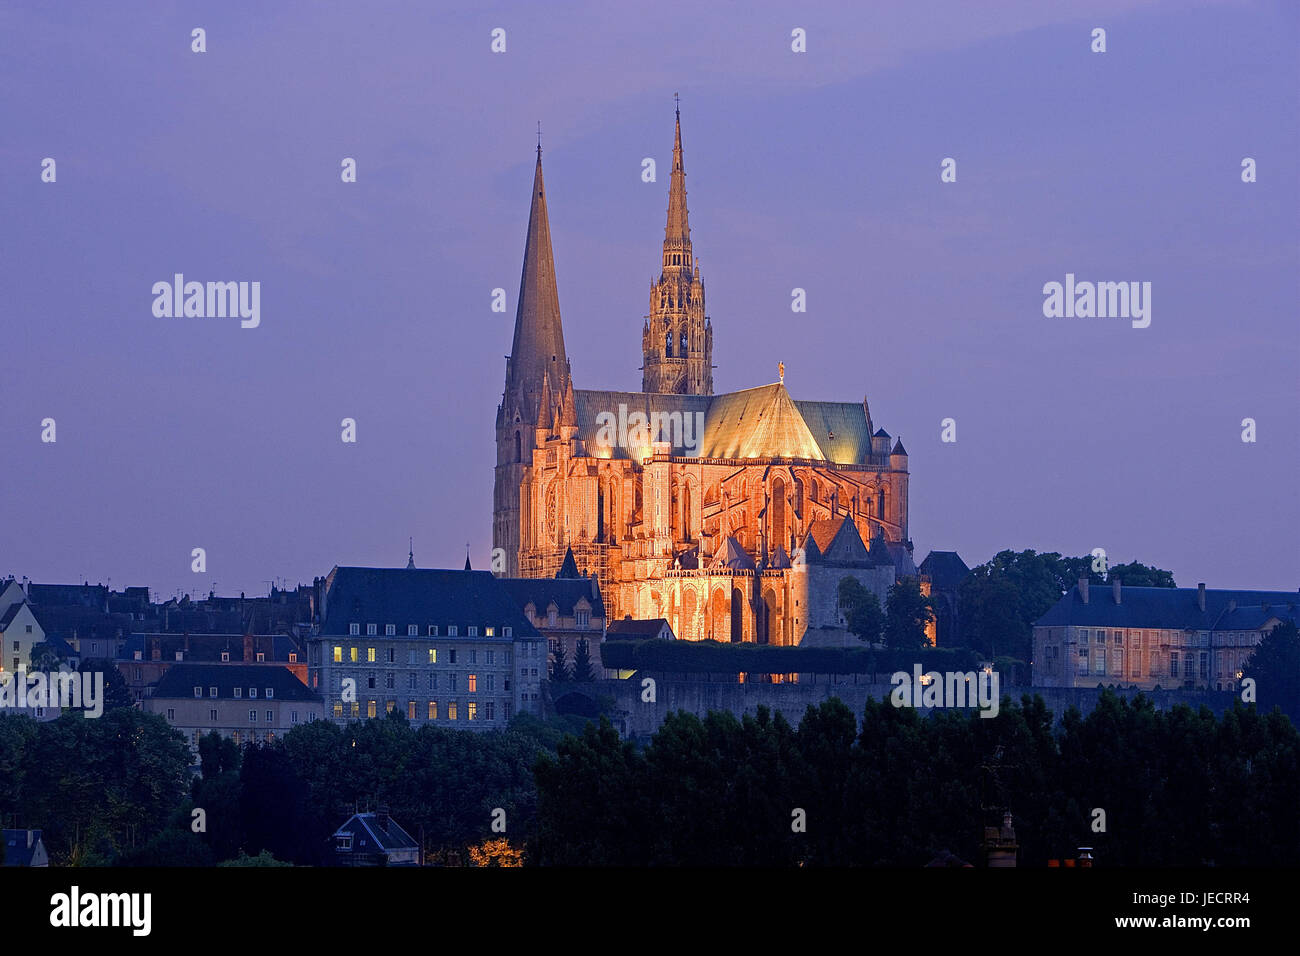 Frankreich, Chartres, Blick auf die Stadt, Kathedrale Notre-Dame, Beleuchtung, Dämmerung, Kirche, Dreischiffig, Struktur, Architektur, historischen Baudenkmal, UNESCO-Weltkulturerbe, Reiseziel, Tourismus, Abend, Stockfoto